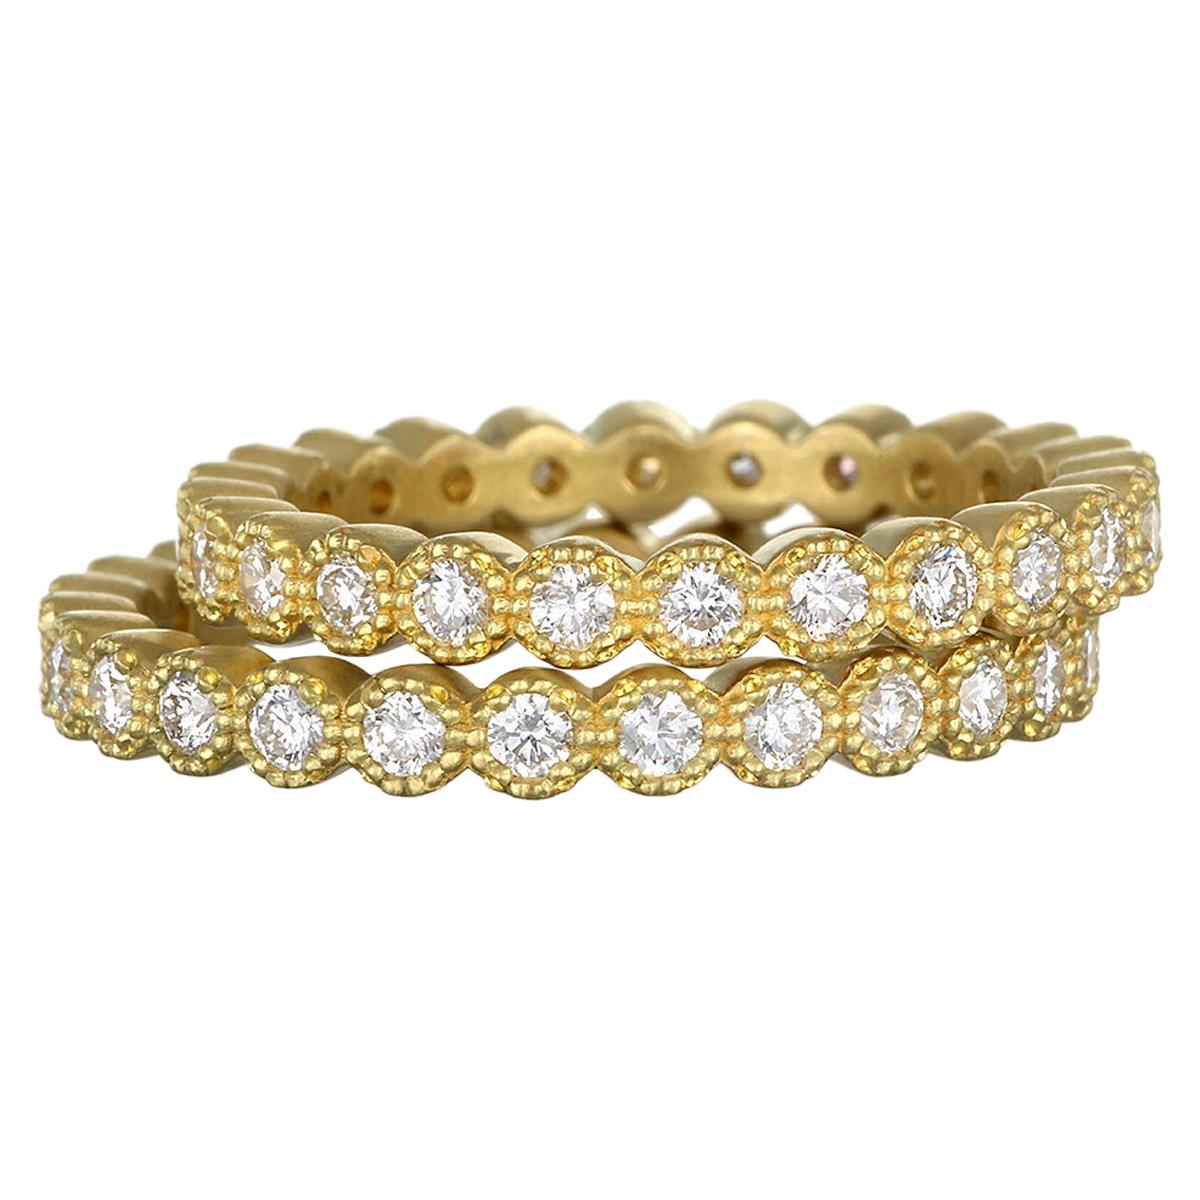 Die 18K Gold Milgrain Diamond Eternity Bands von Faye Kim können einzeln oder gestapelt getragen werden und sind eine großartige Ergänzung zu Ihrer Schmucksammlung. 
Klassisches Ewigkeitsarmband mit Milgrain-Kante. Die strahlend weißen Diamanten